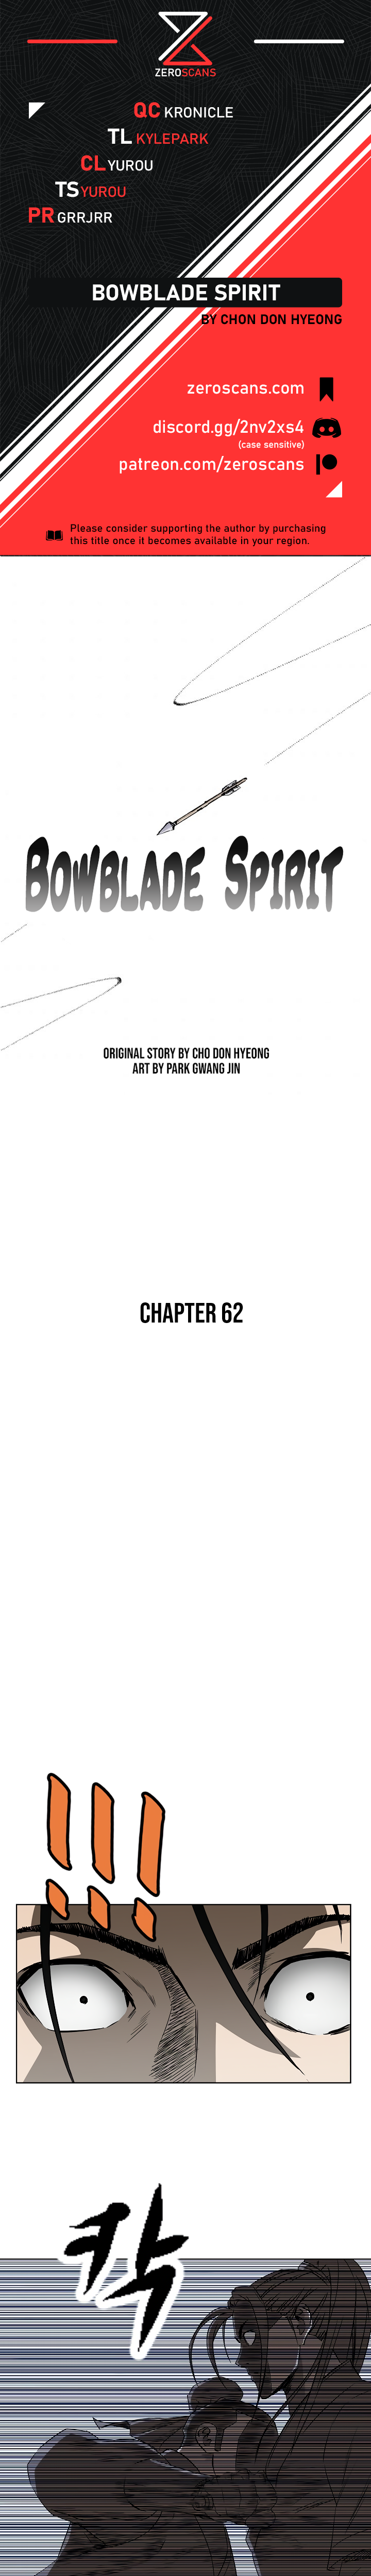 Bowblade Spirit - Chapter 5987 - Image 1